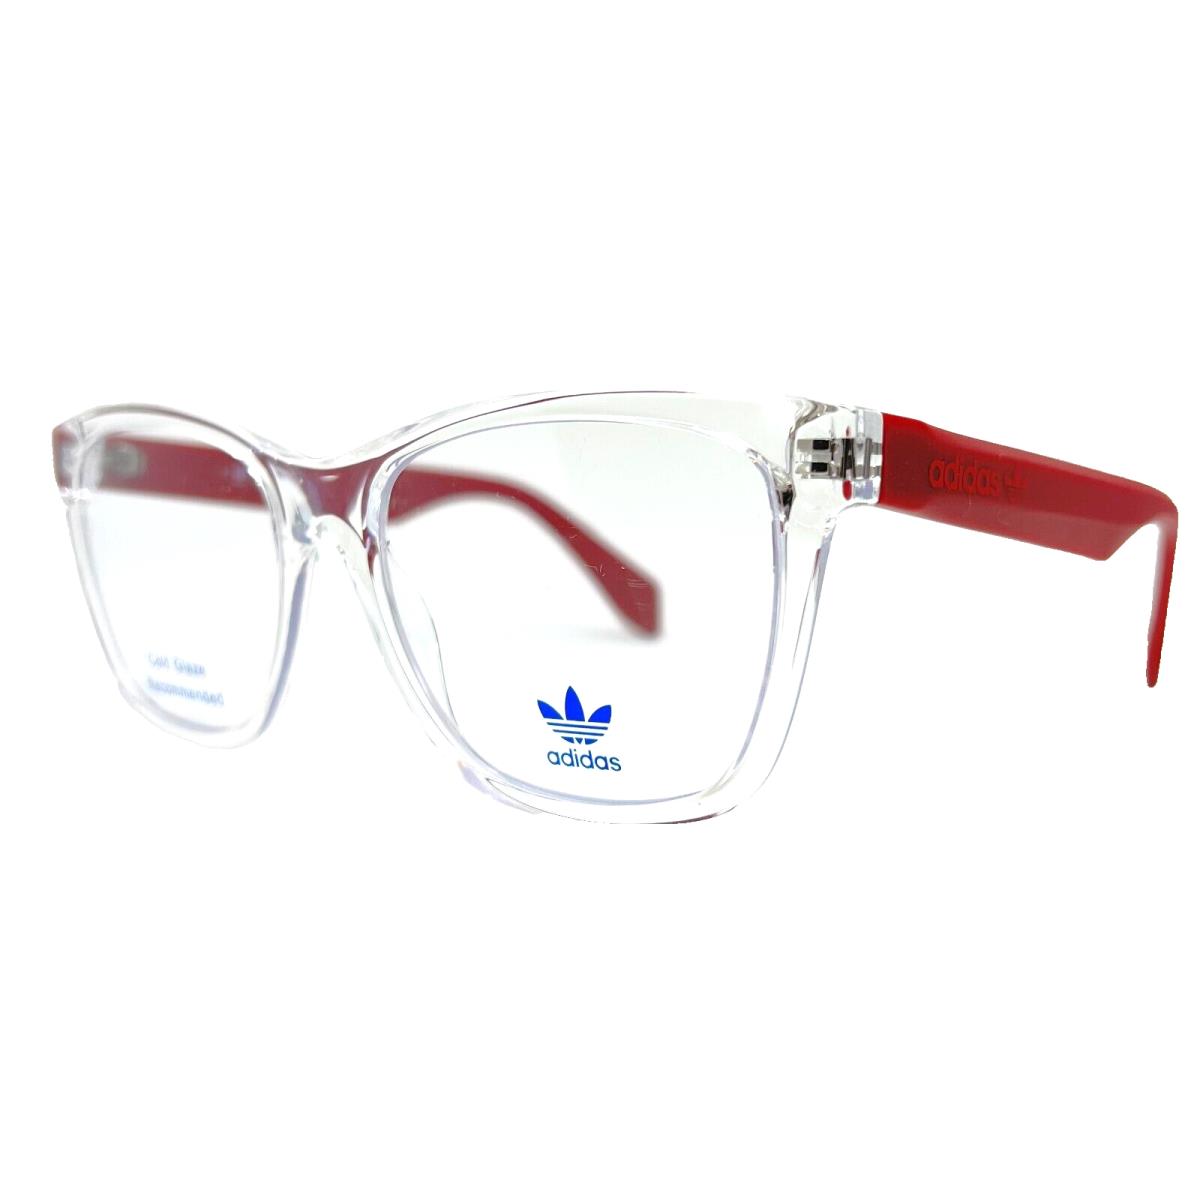 Adidas Originals - OR5025 026 54/16/145 Crystal Eyeglasses Case